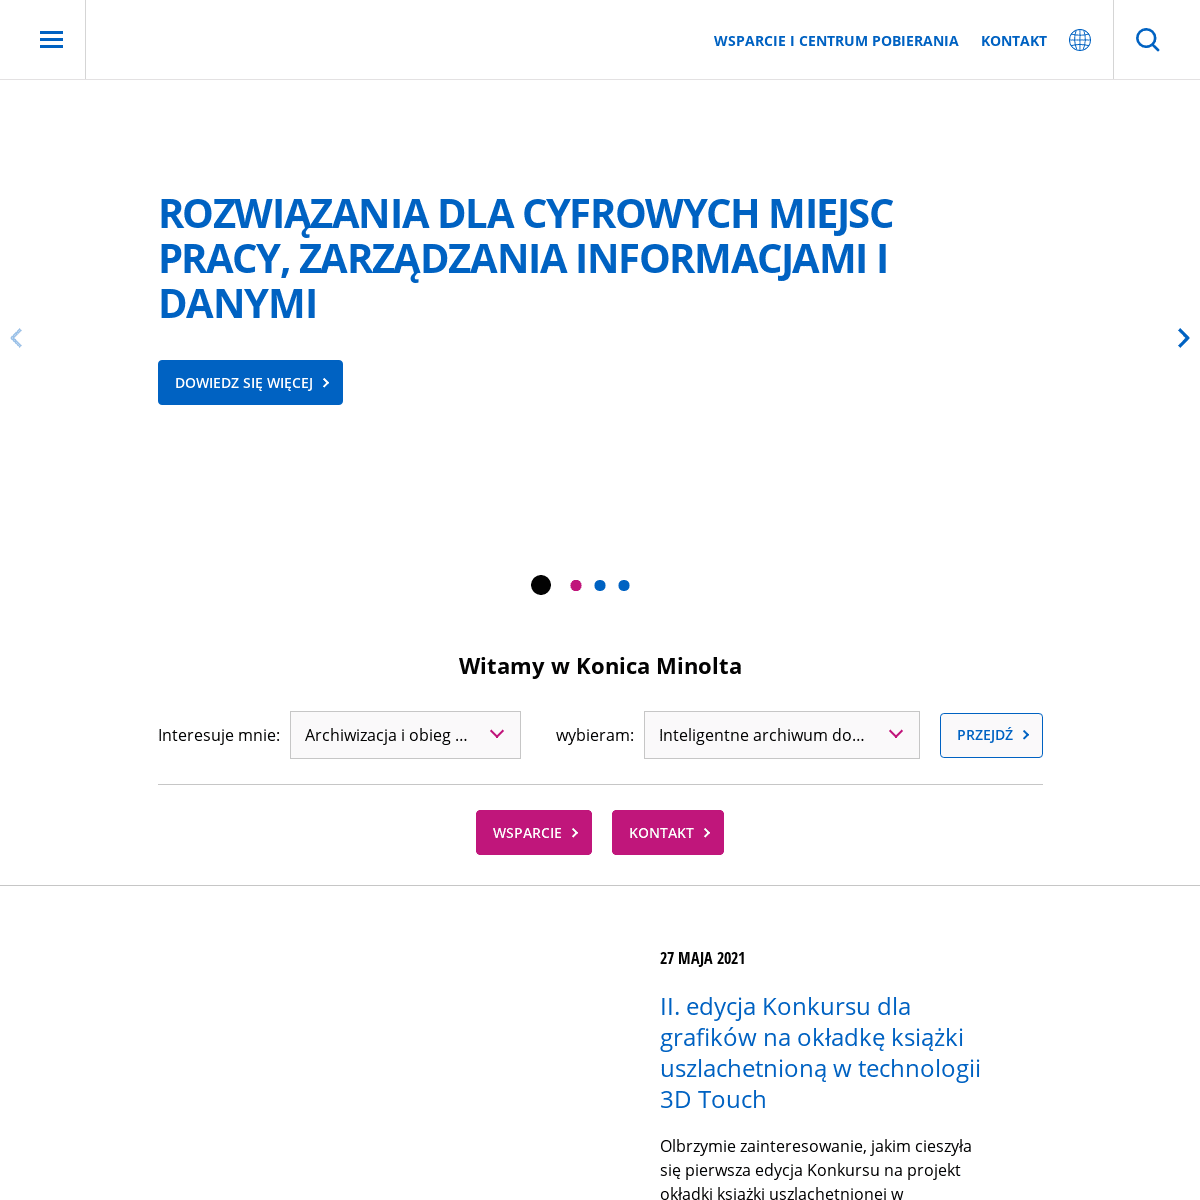 A complete backup of https://konicaminolta.pl